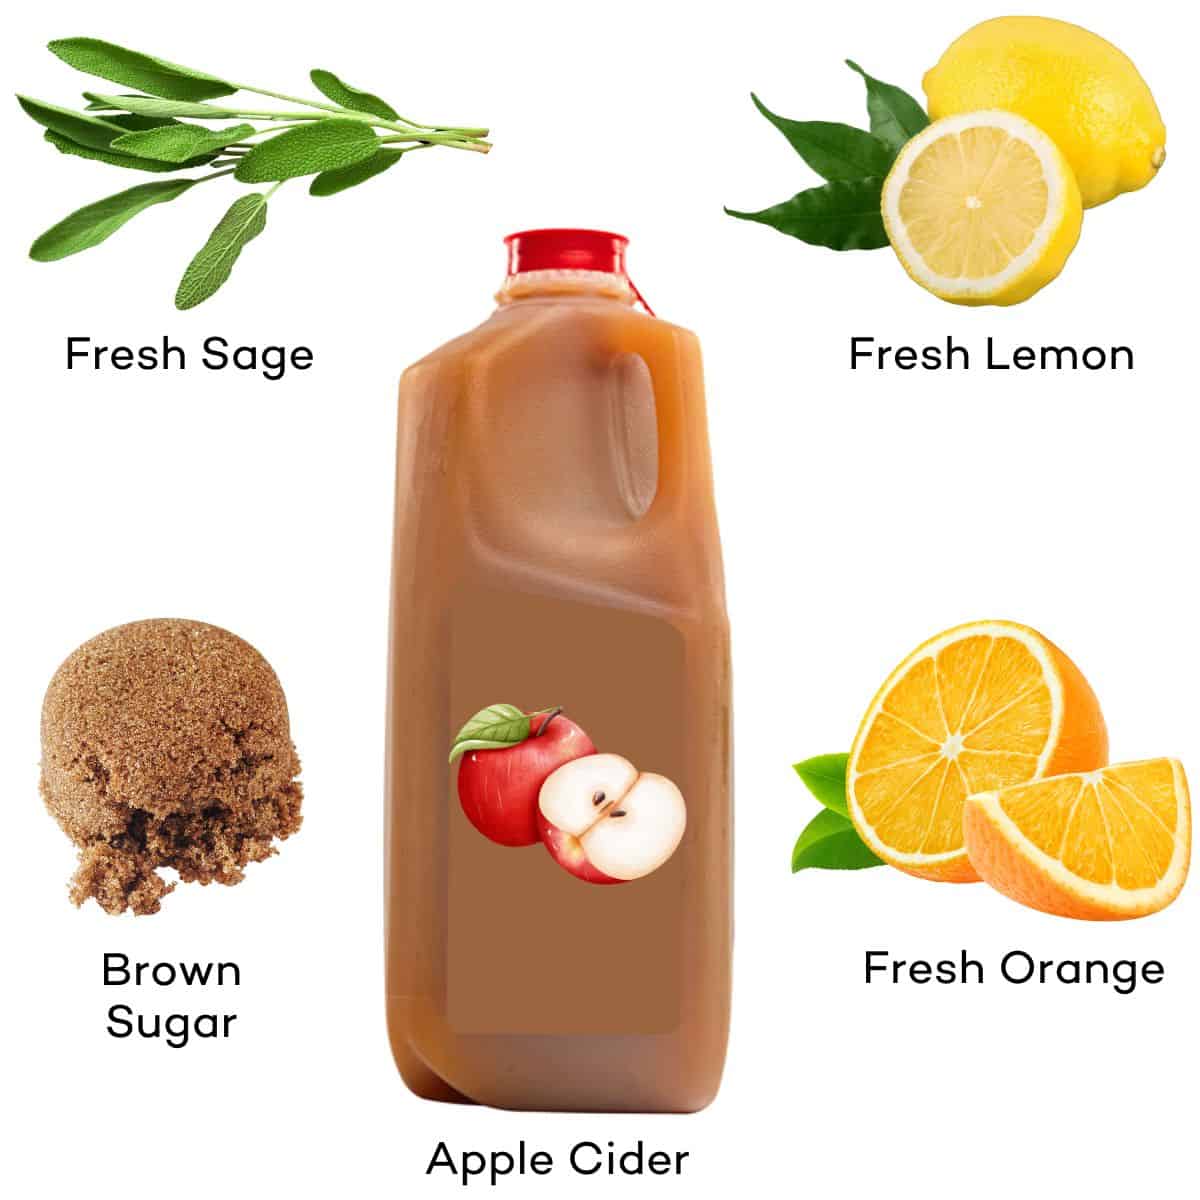 Ingredients for apple cider syrup - apple cider, brown sugar, orange, lemon, sage. 